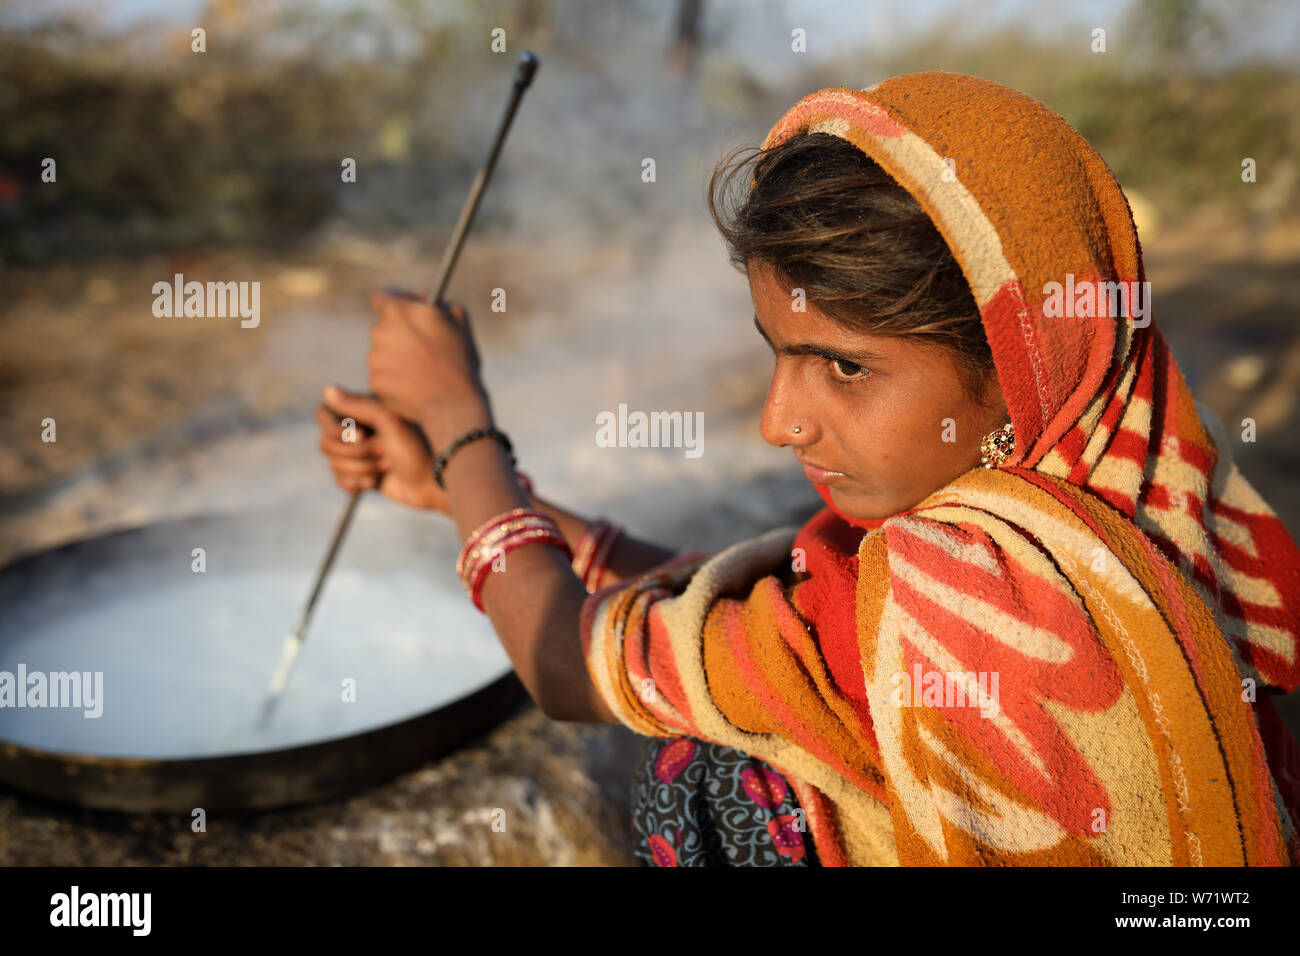 Rabari Frau in einem ländlichen Dorf im Bezirk von Kutch, Gujarat. Die Region Kutch ist bekannt für seine Stammesleben und traditionelle Kultur bekannt. Stockfoto